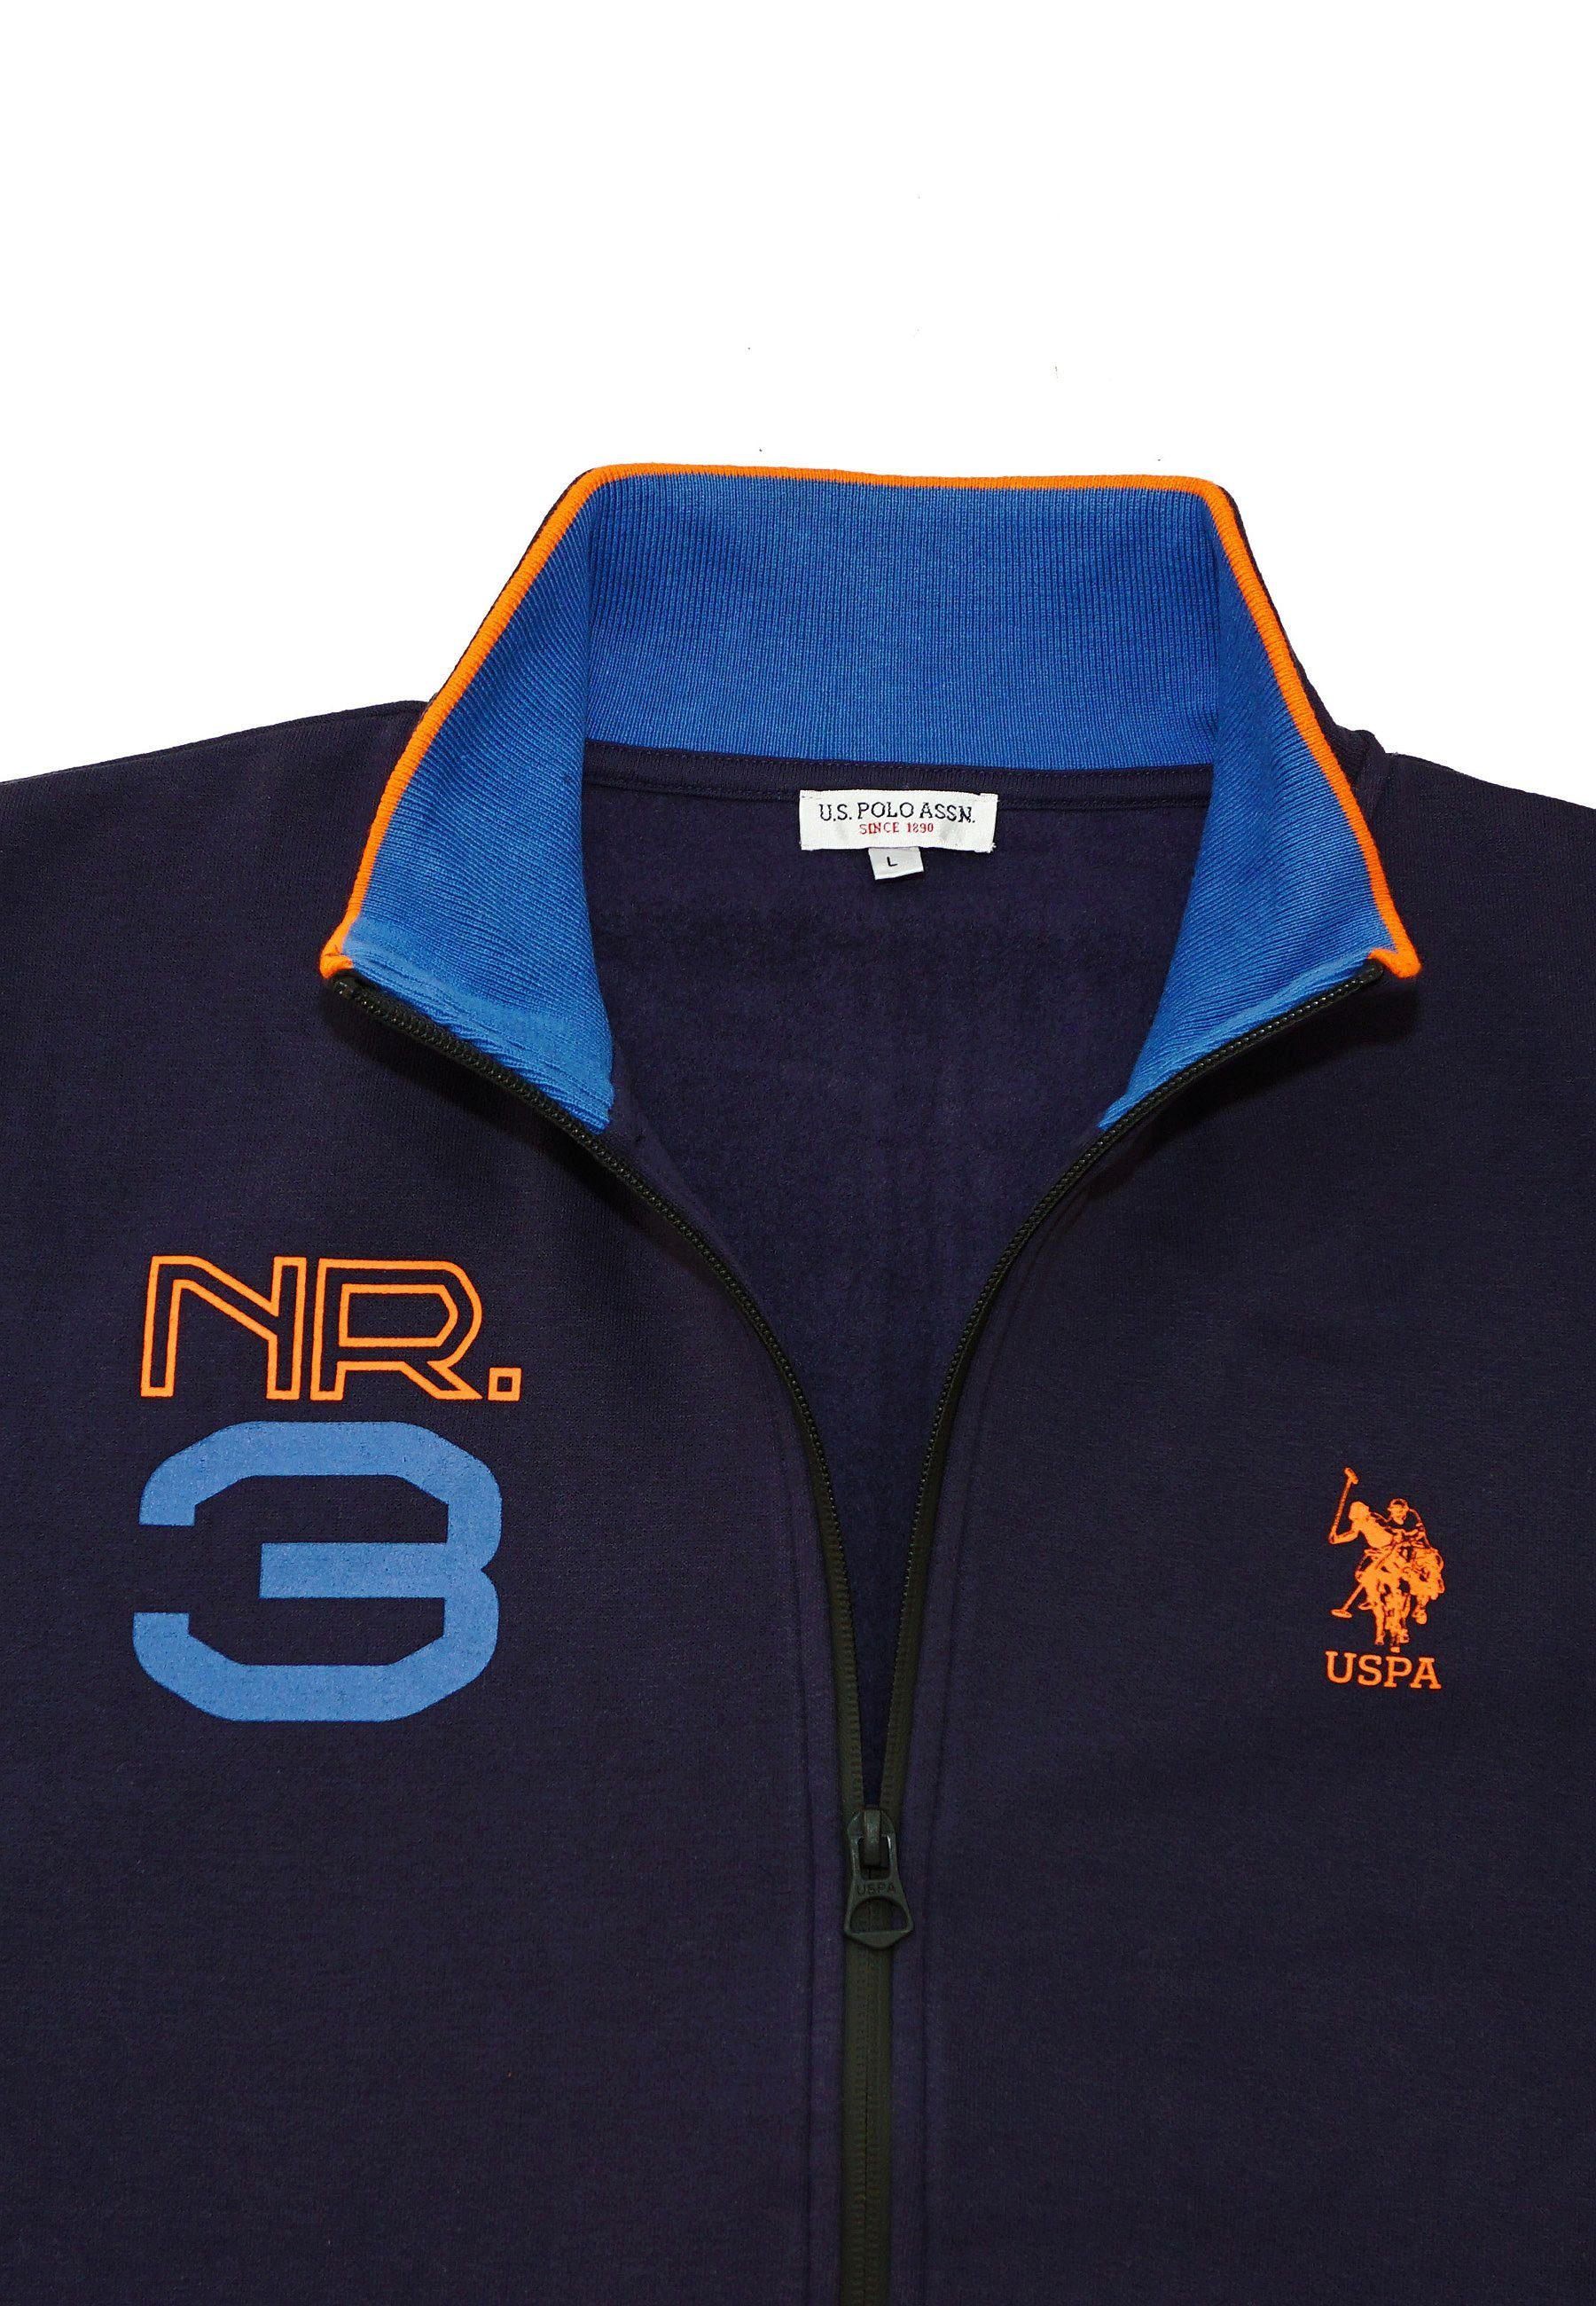 U.S. Polo Assn Sweatjacke Jacke No.3 Pro dunkelblau Full Sweatjacket Zip